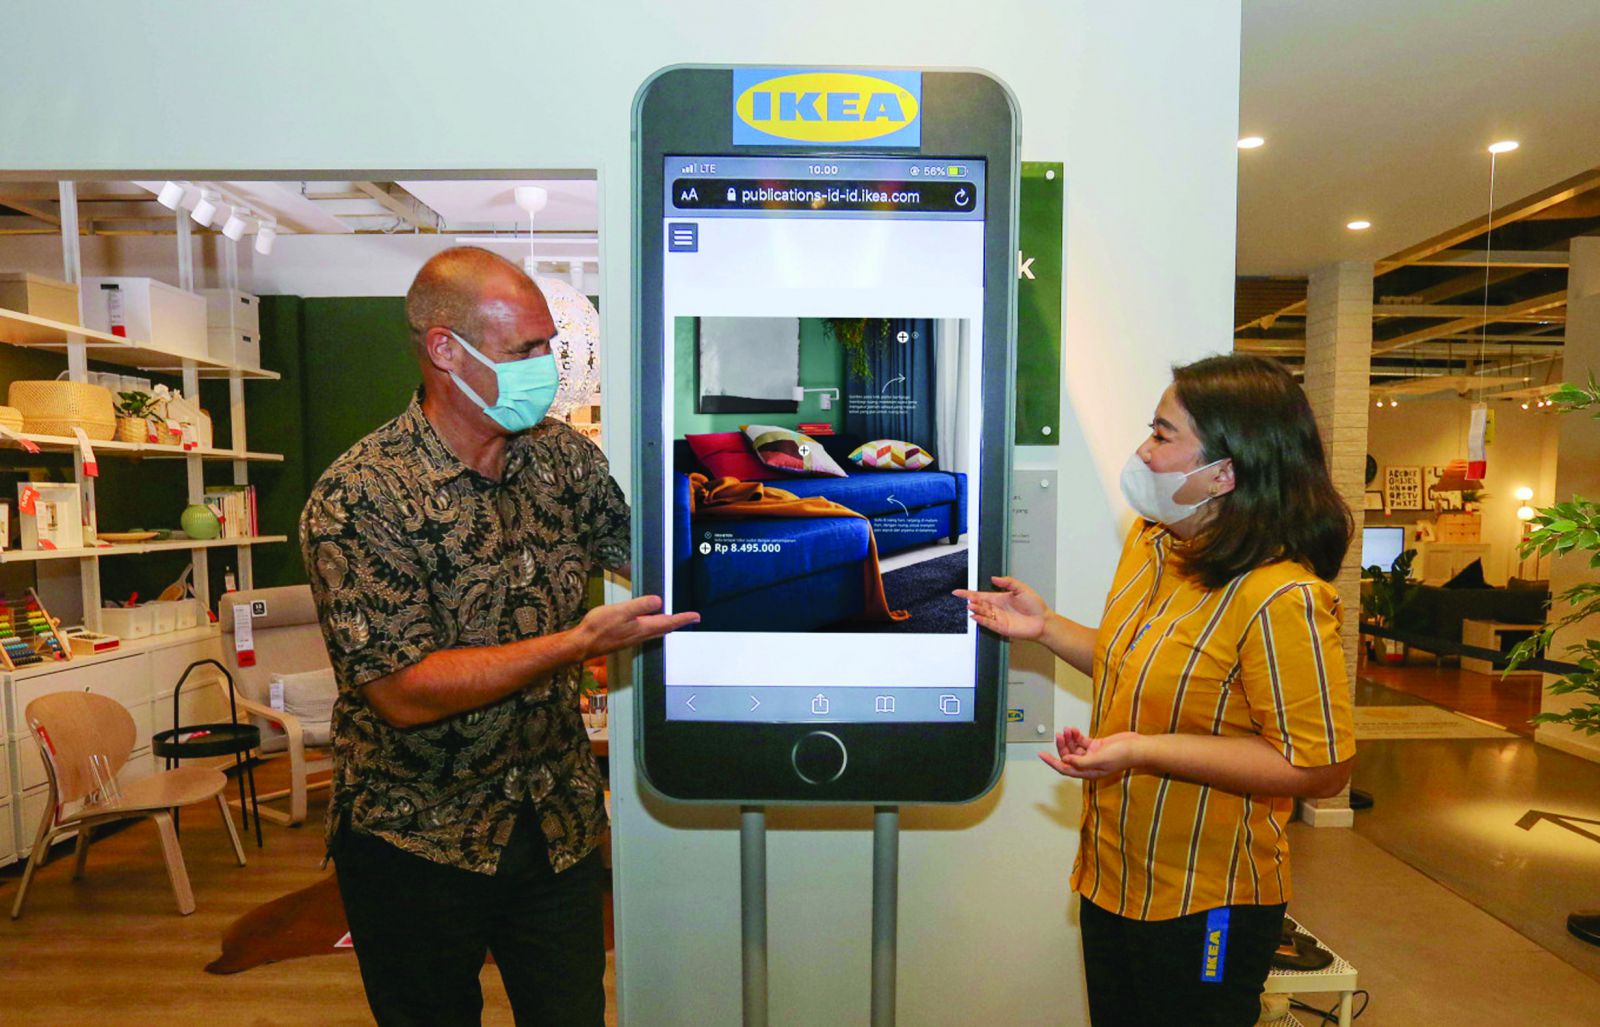 IKEA cải tiến các hình thức tương tác với khách hàng ở trên online lẫn offline sau đó dữ liệu được kết nối với nhau. Ảnh: jakartapost